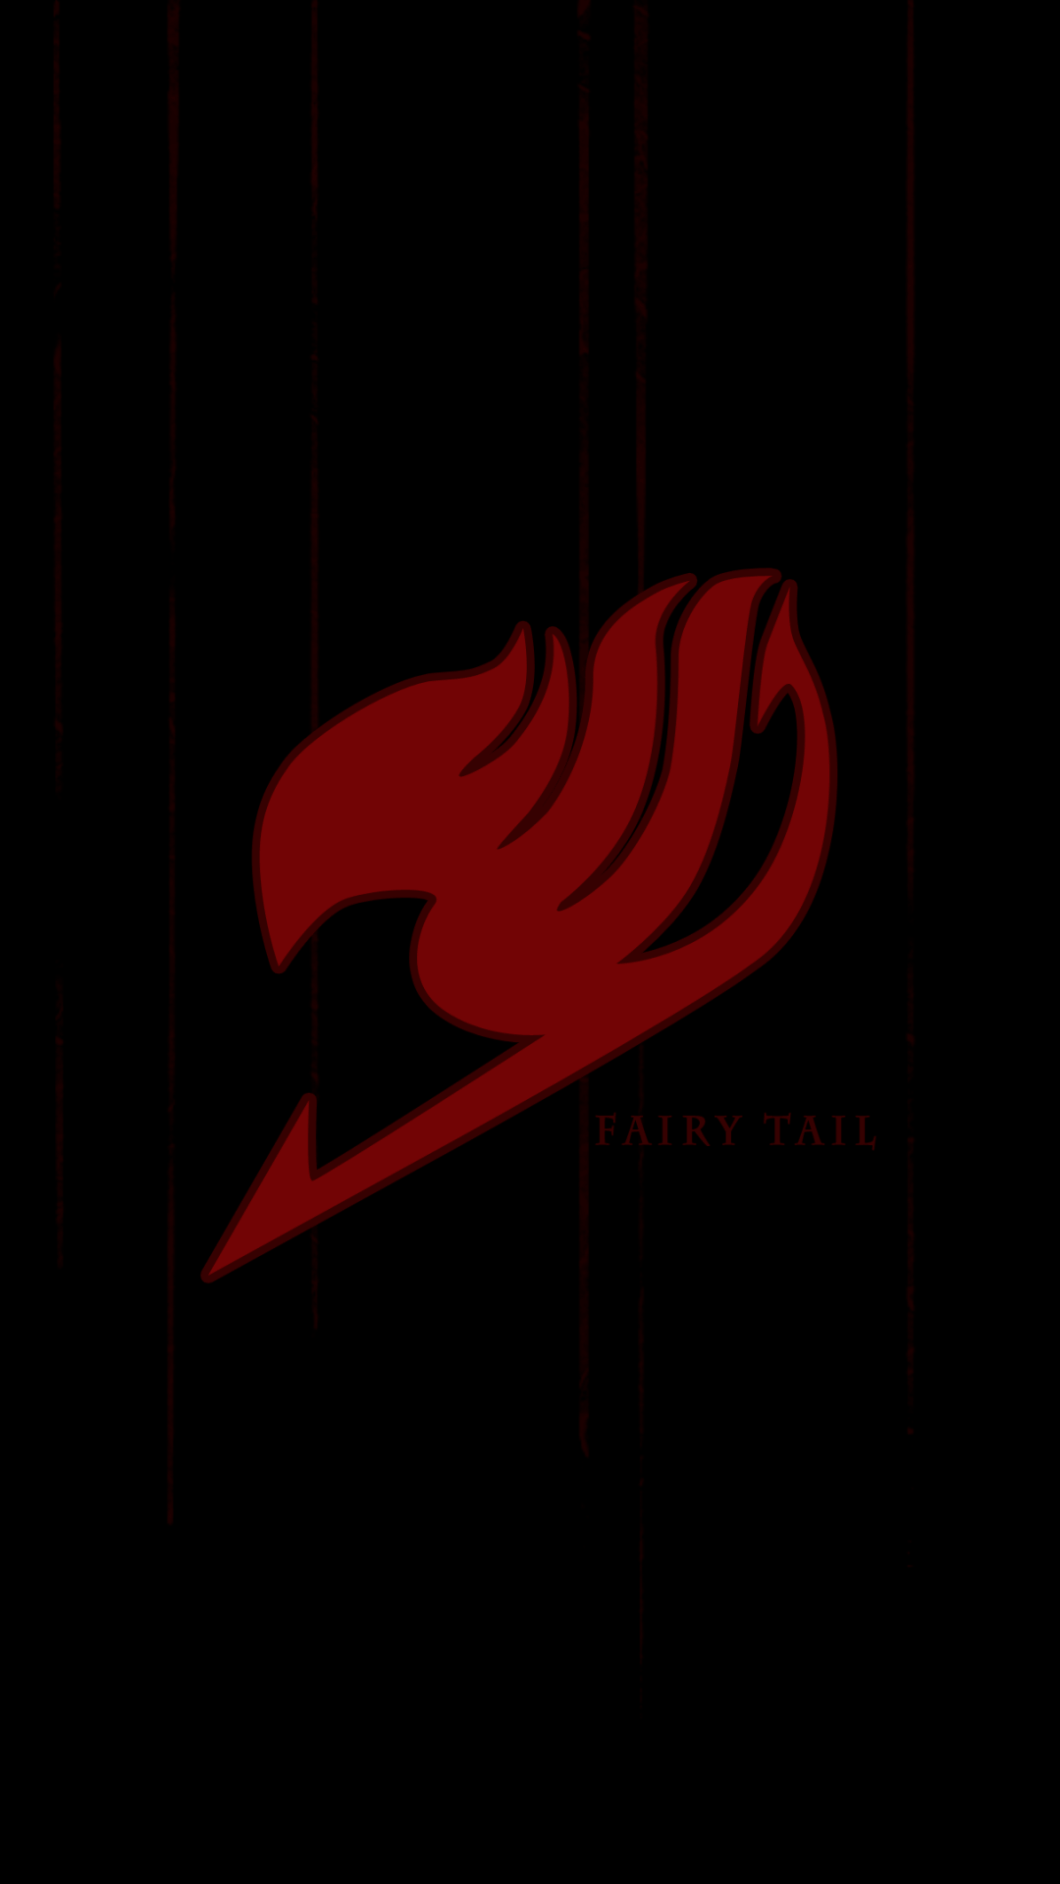 Fairy Tail Emblem Wallpaper HD